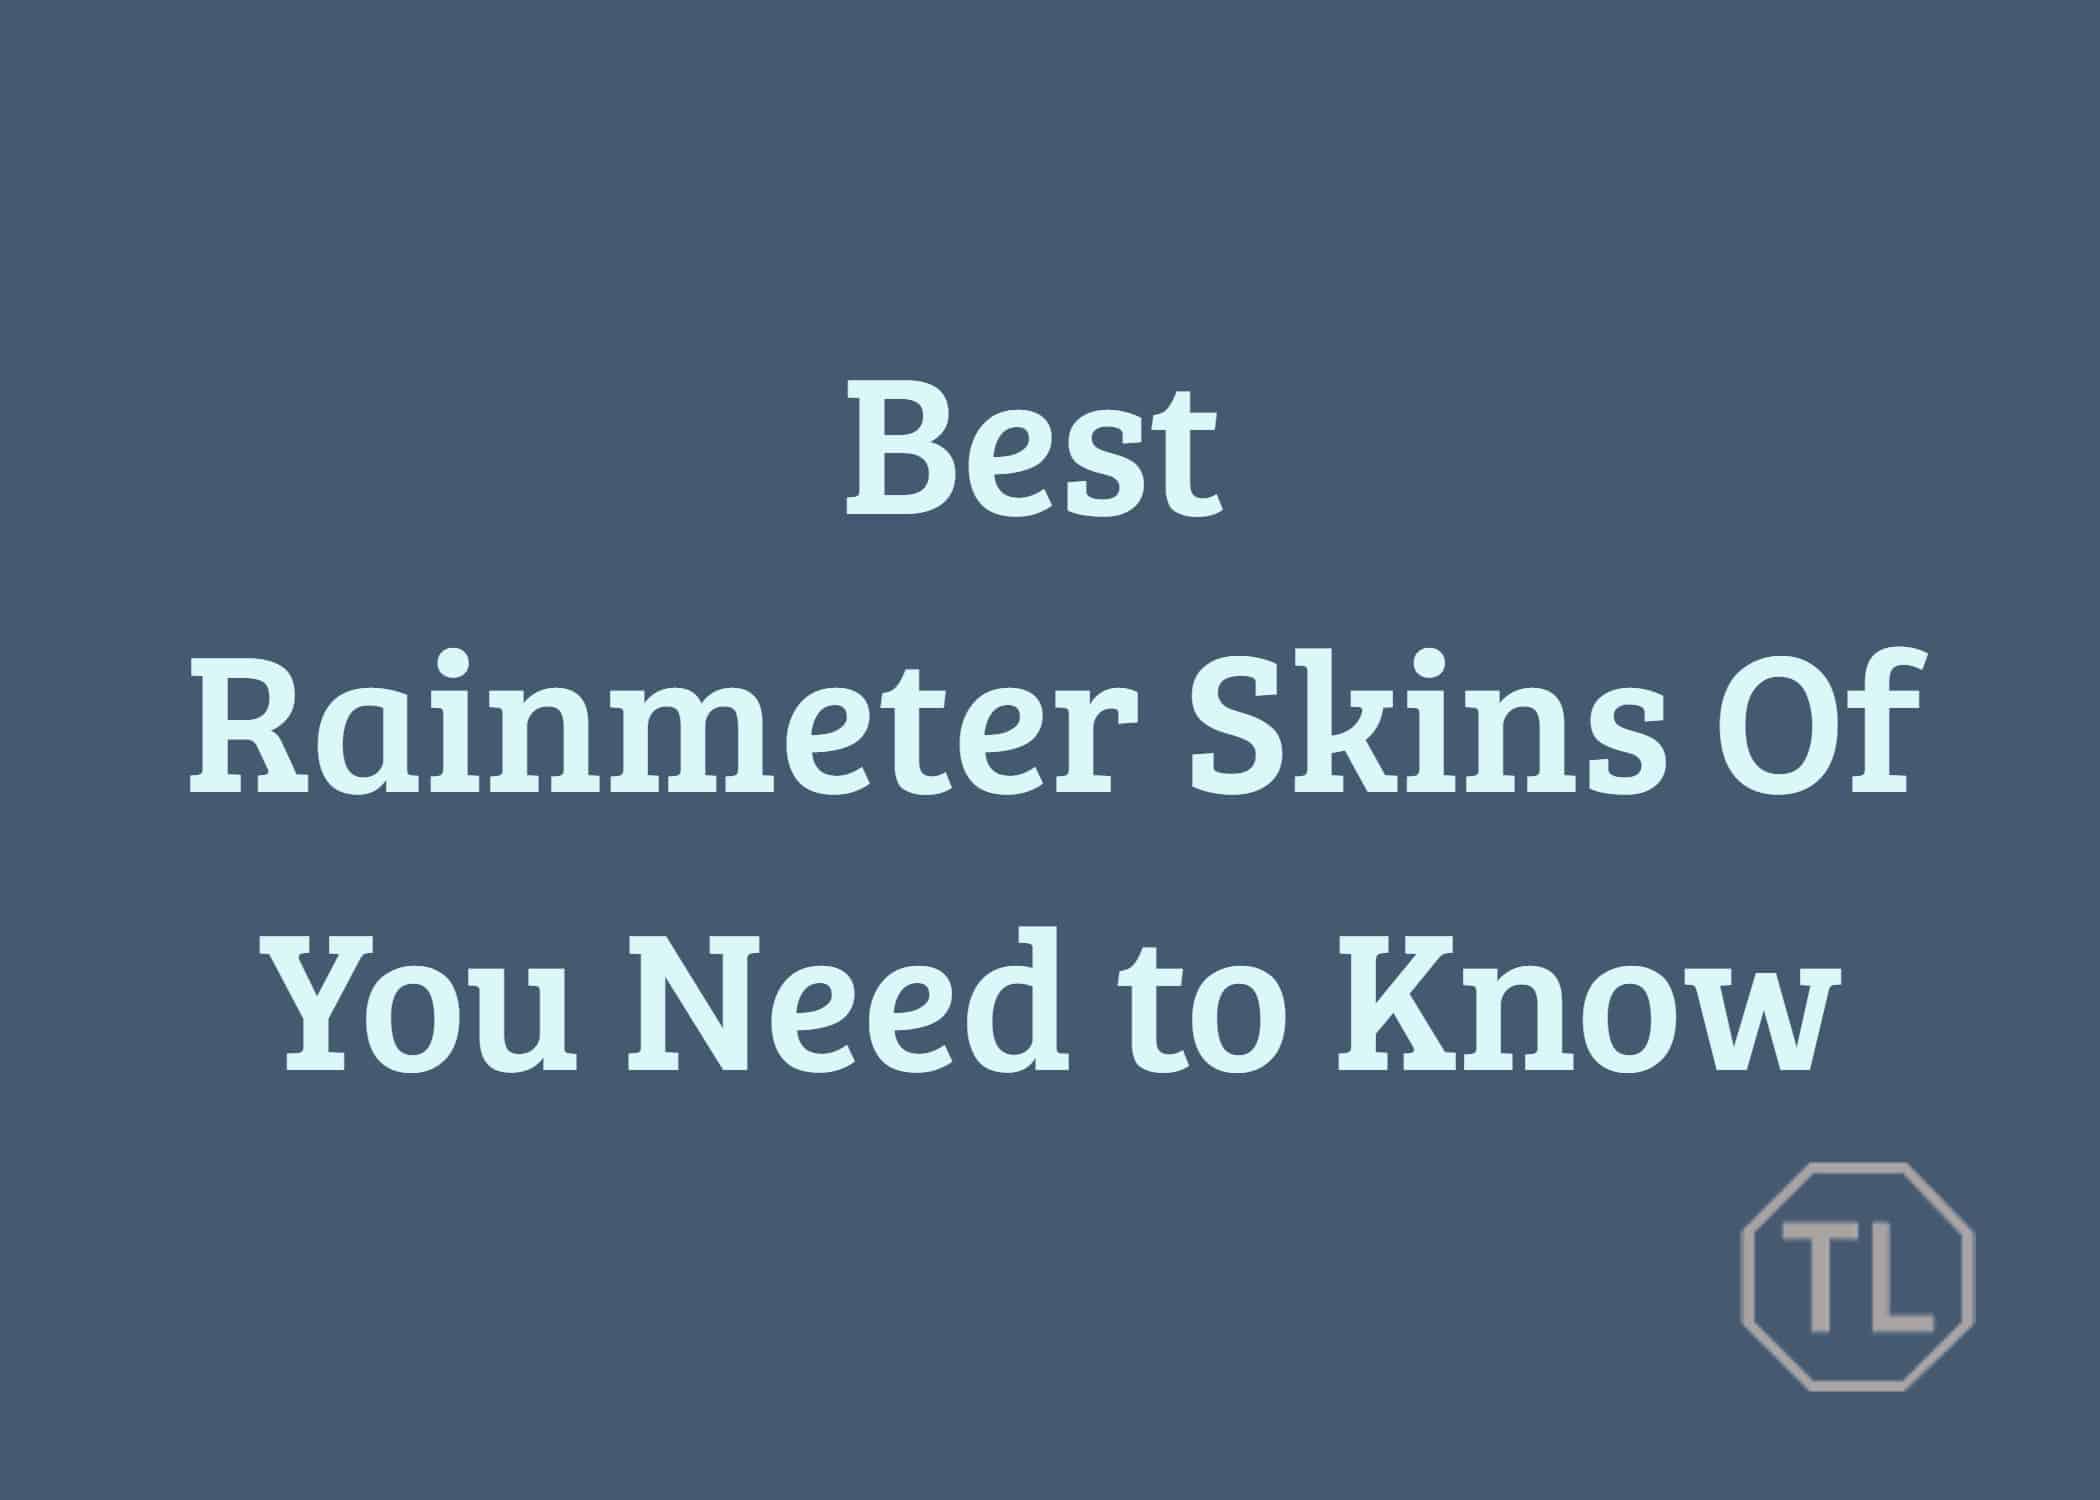 Best rainmeter skins